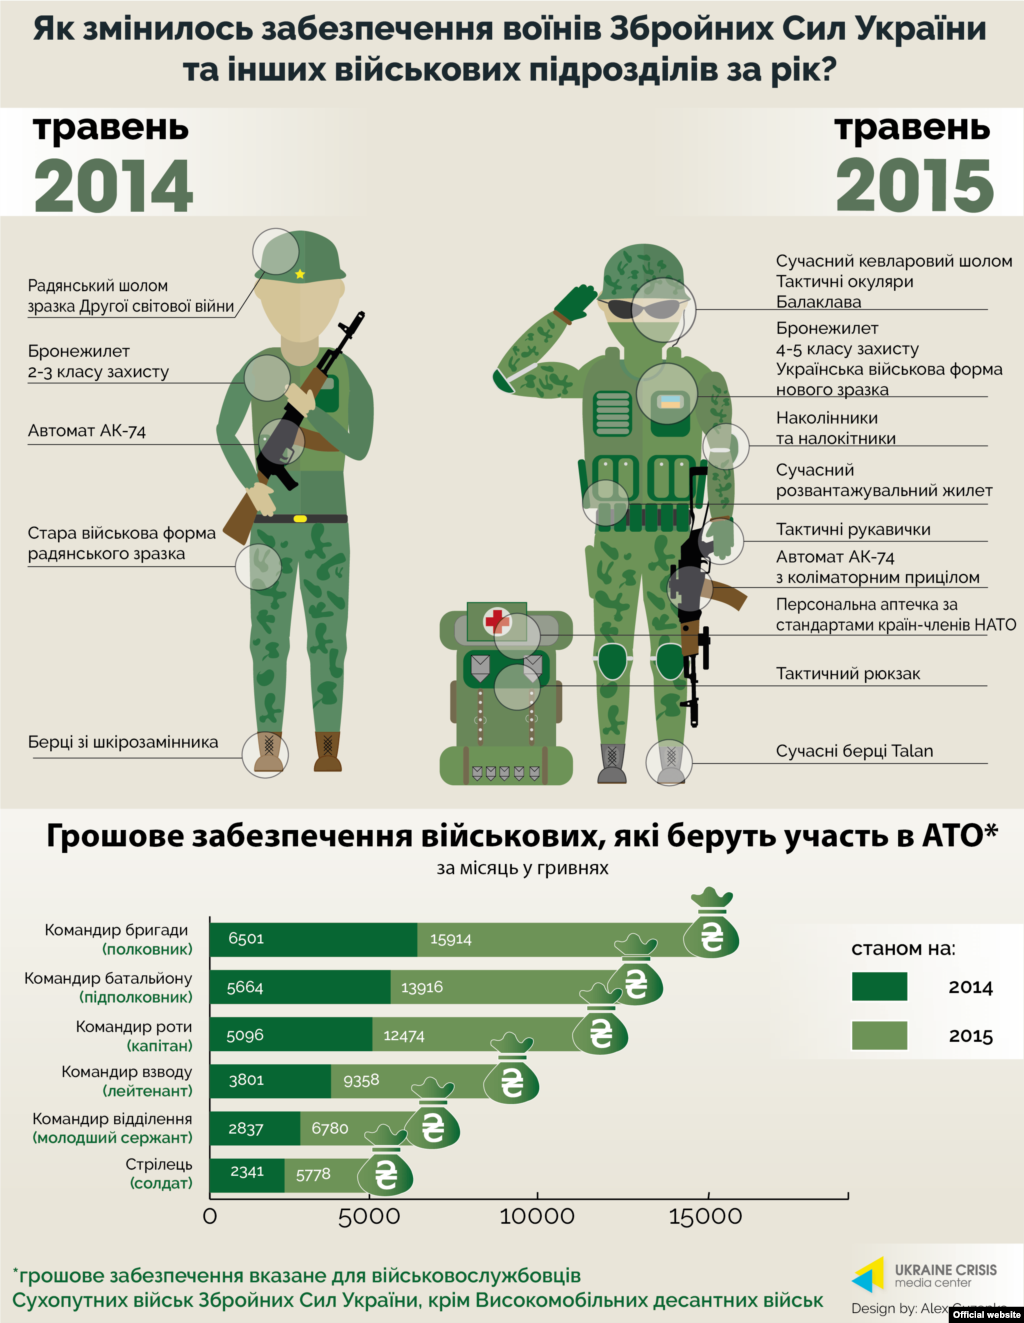 Інфографіка&nbsp;Українського кризового медіа-центру